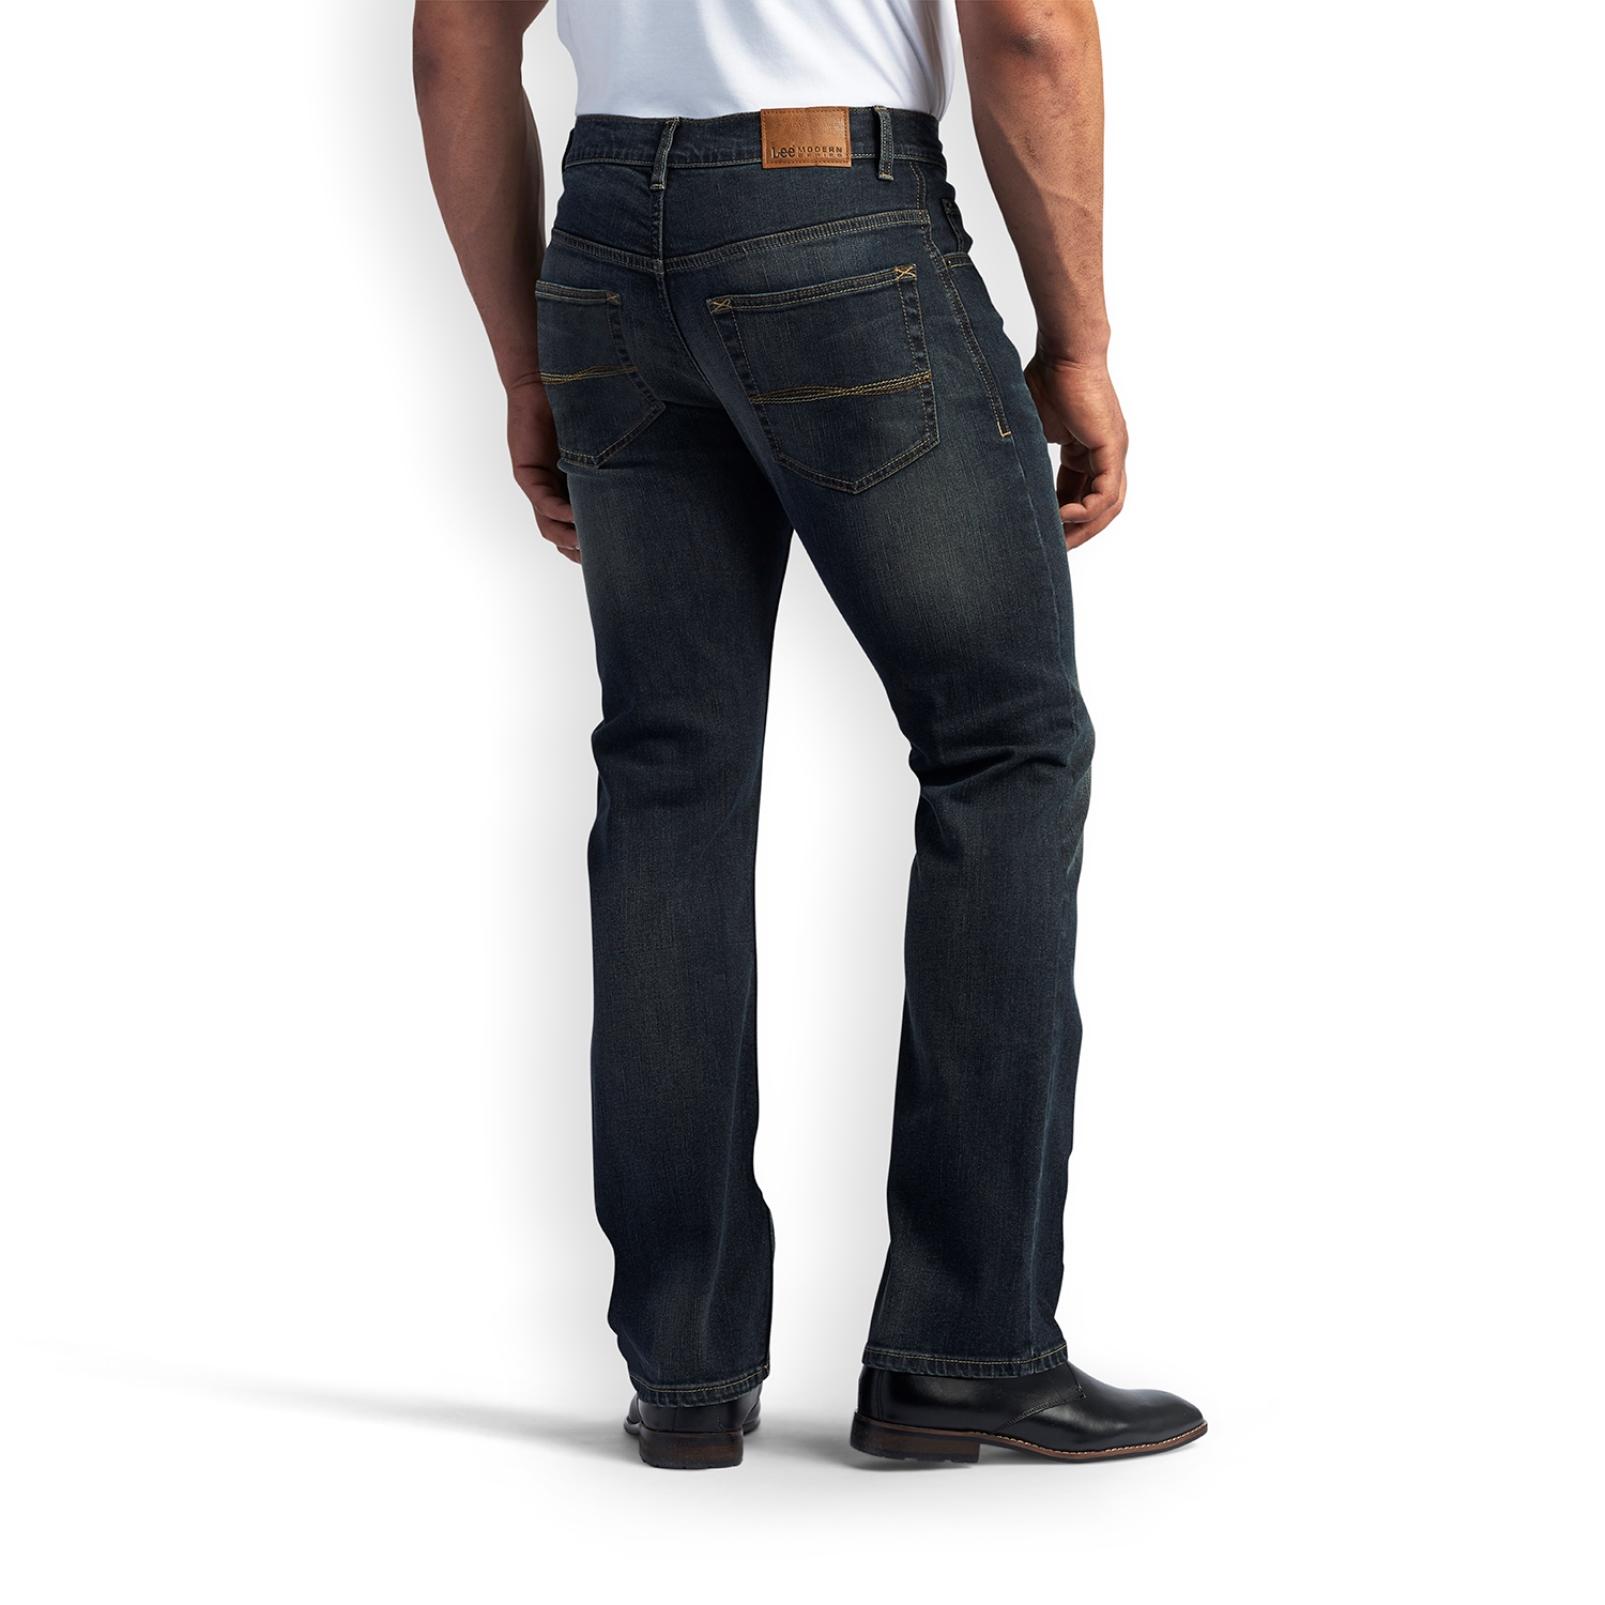 lee modern series bootcut jeans